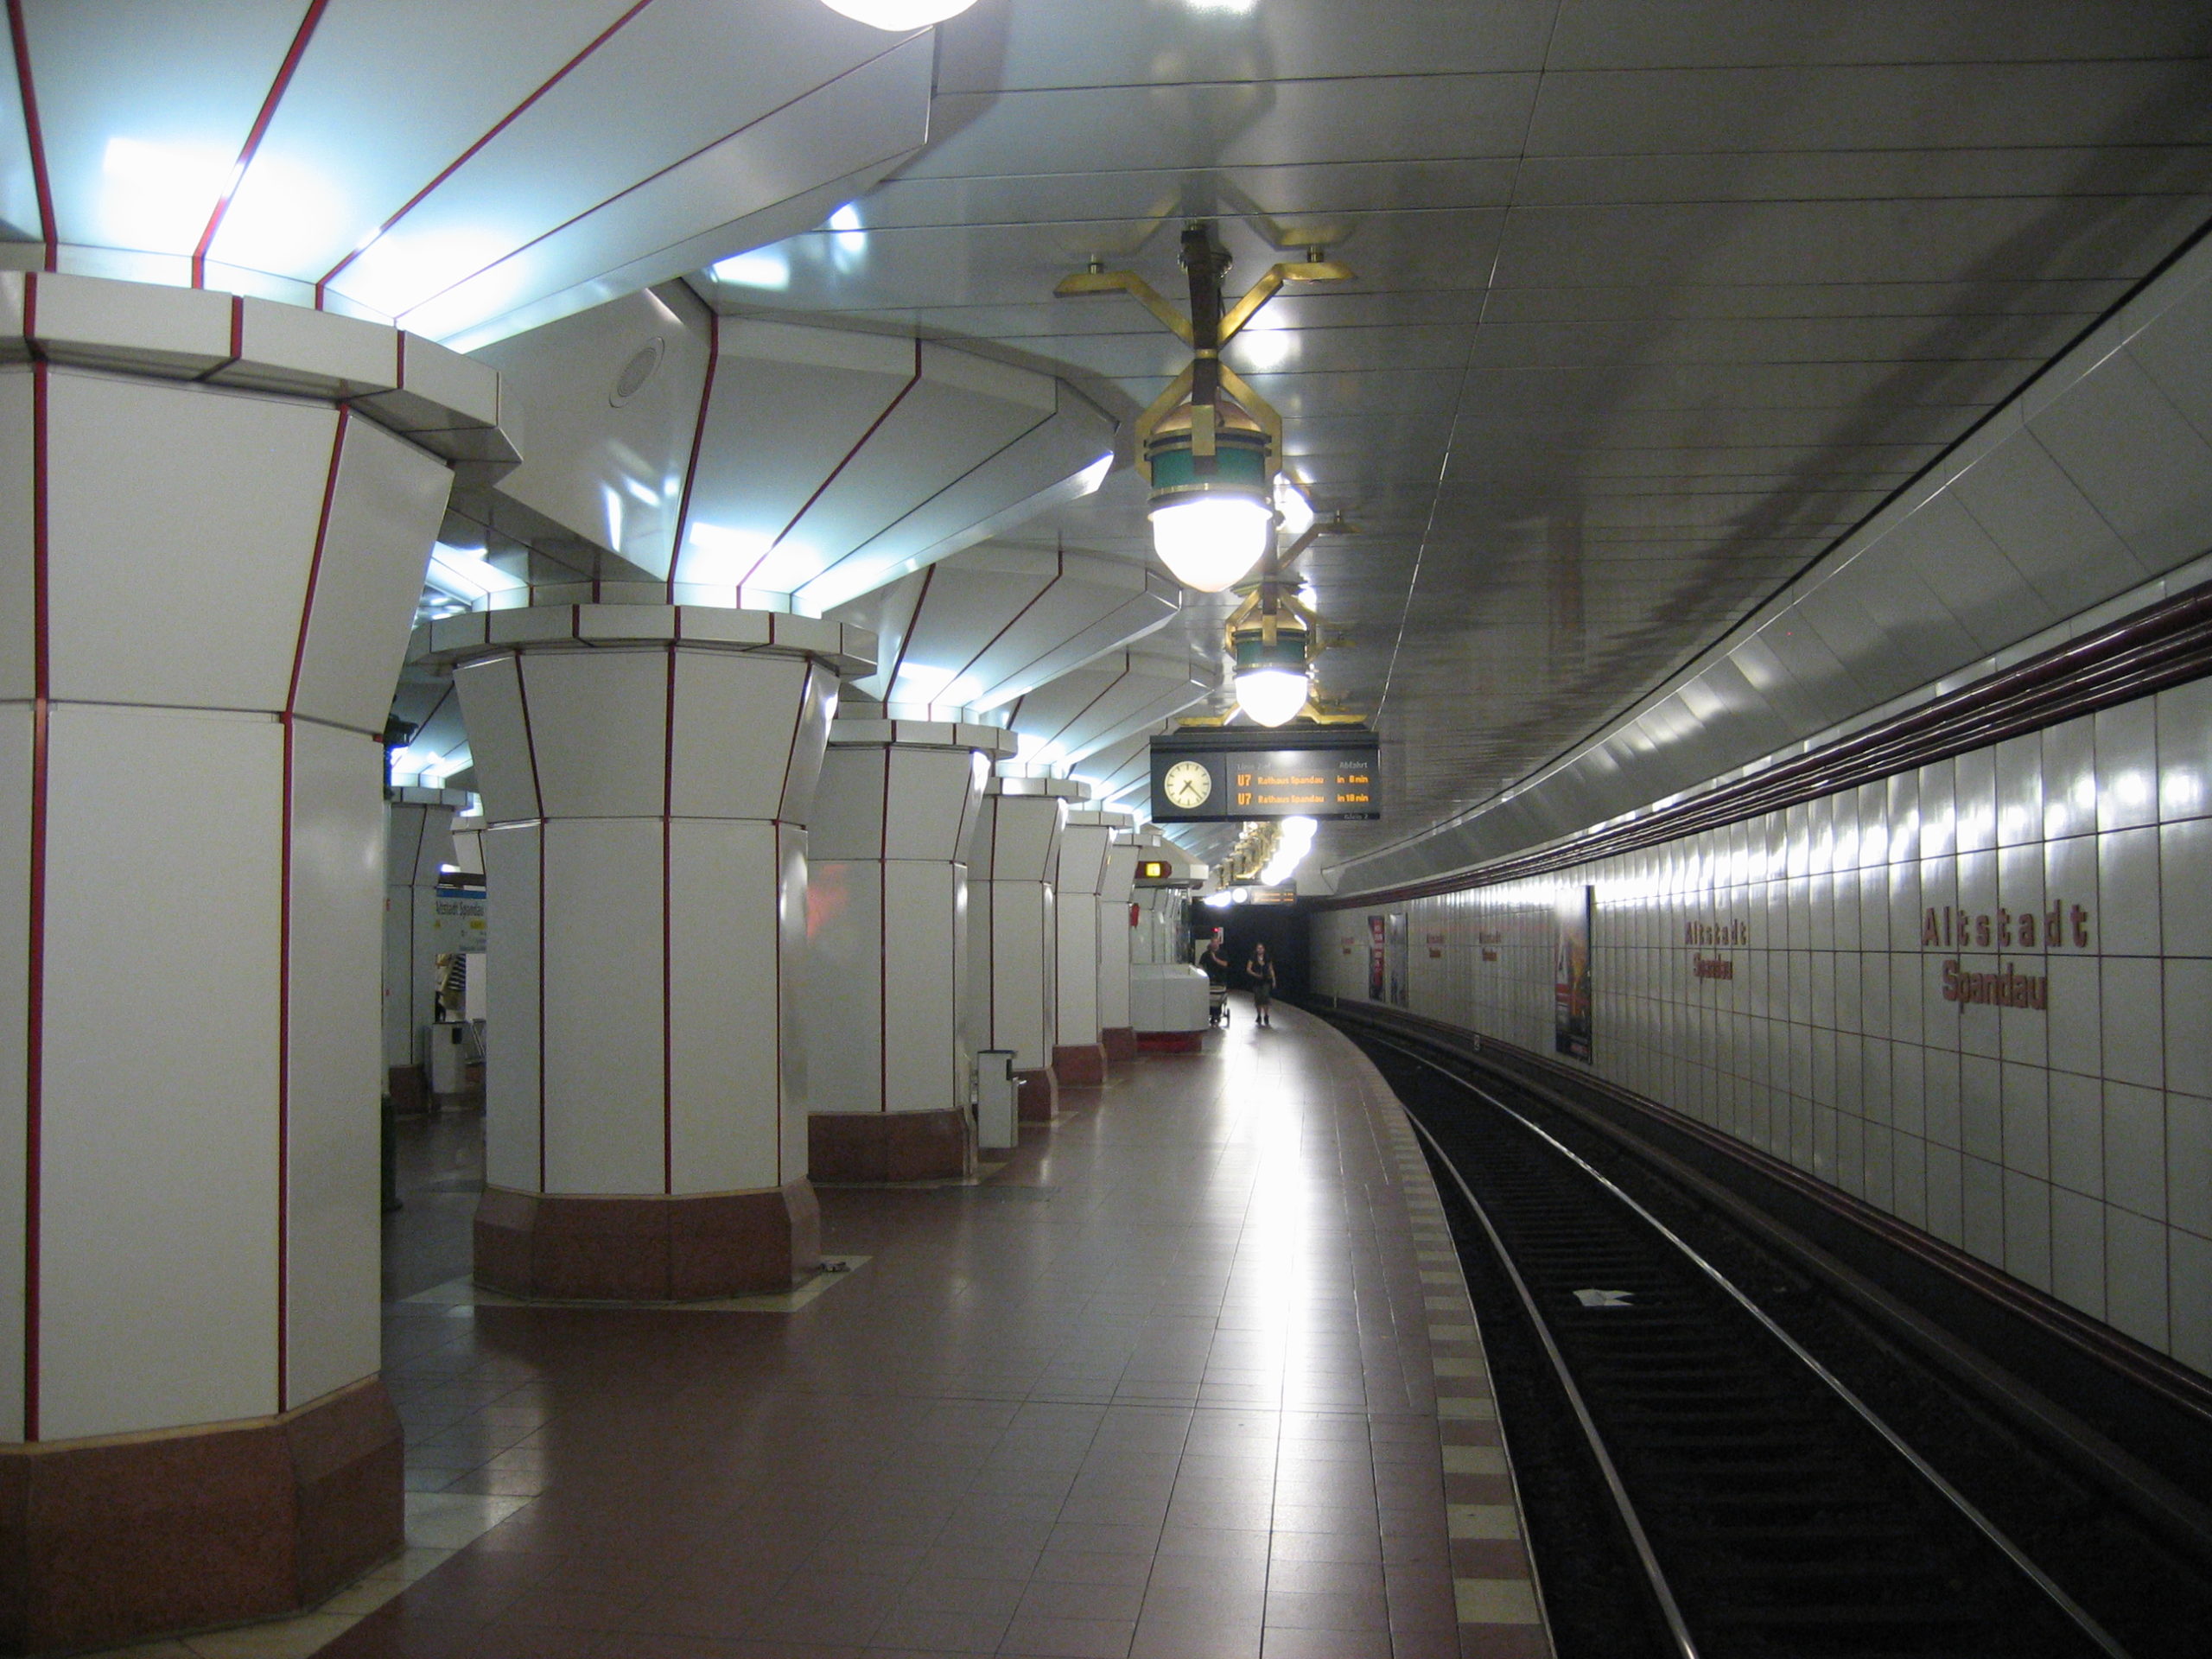 Über diesem Bahnhof liegt eines der malerischsten Quartiere Berlins. Foto: ReferenceBK/Wikimedia Commons/CC BY-SA 3.0